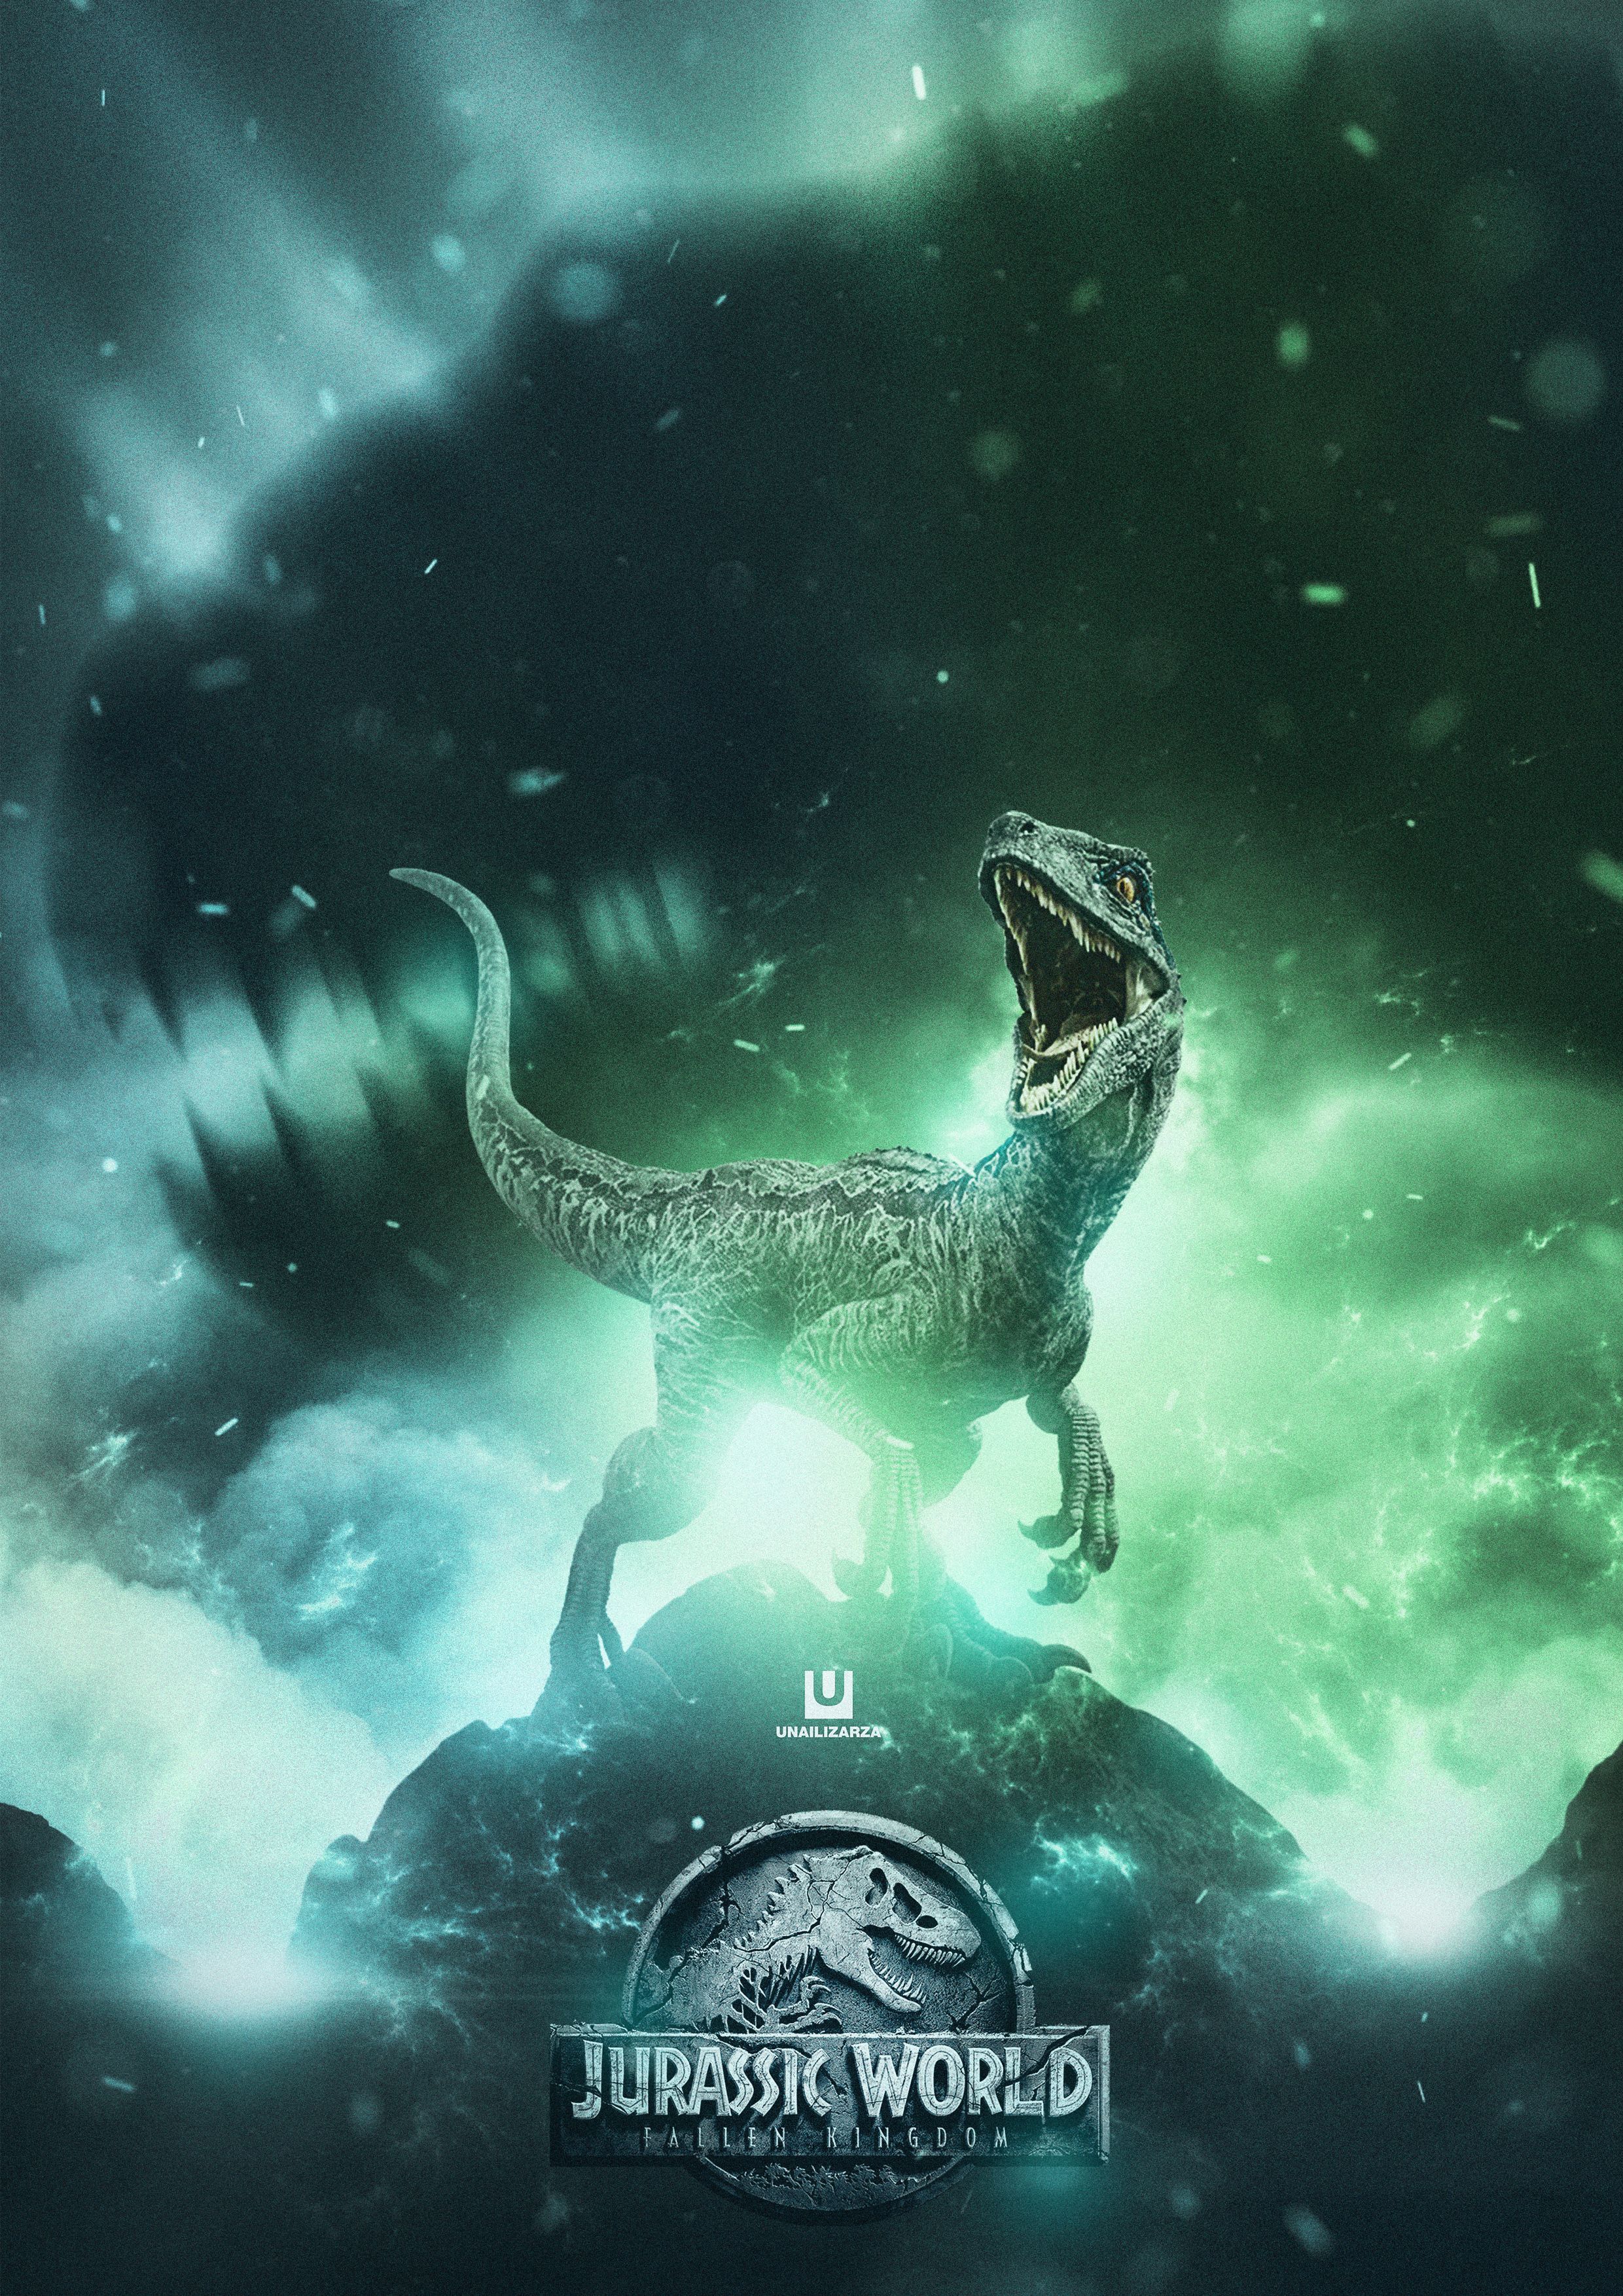 Best Dinosaurs image. Jurassic park world, Prehistoric